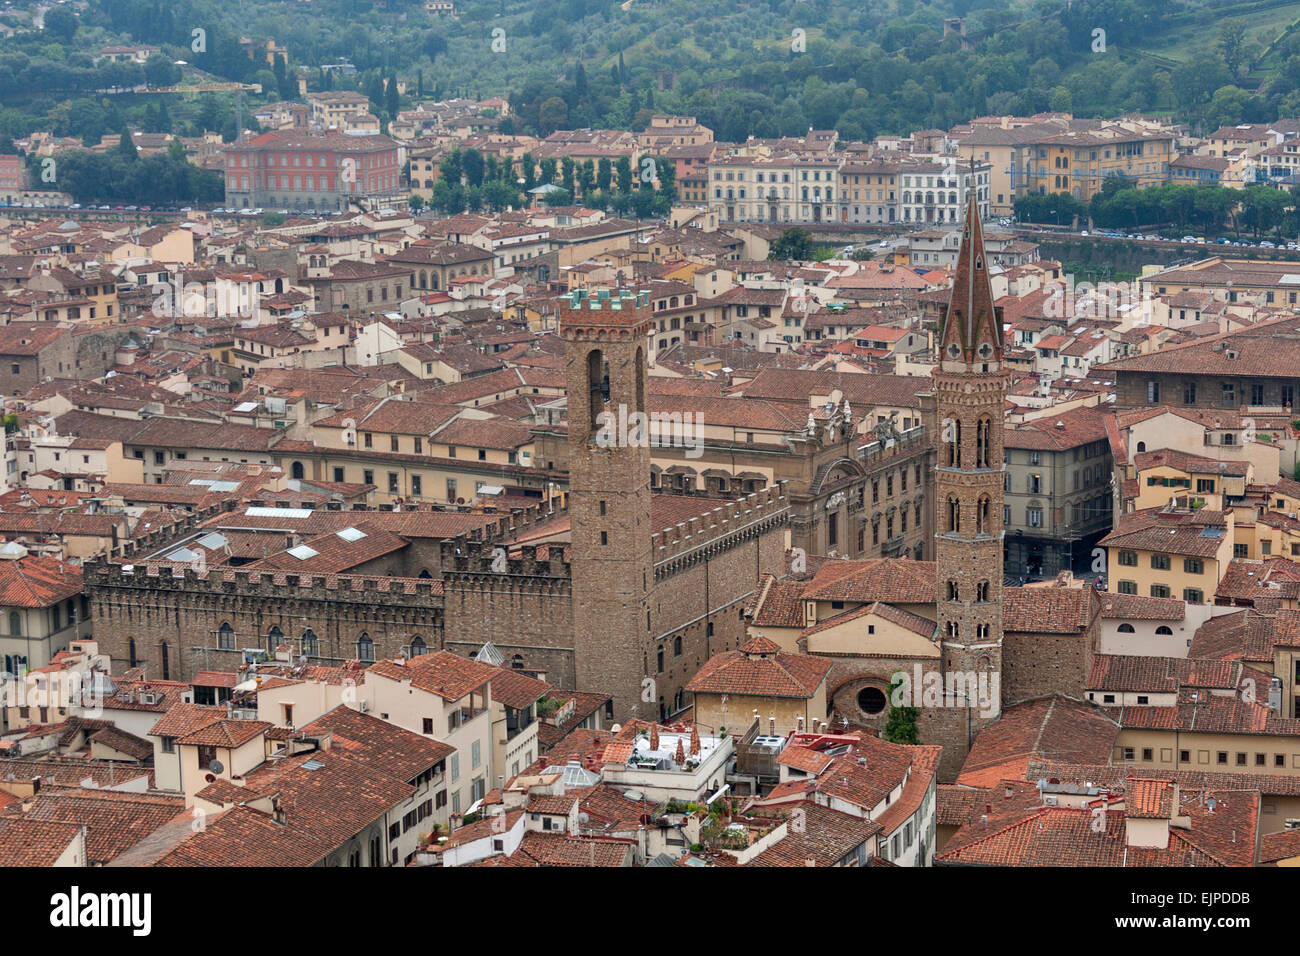 Florenz Stadtbild mit Badia Fiorentina und Palazzo del Bargello im Nebel. Luftaufnahme. Italien. Stockfoto